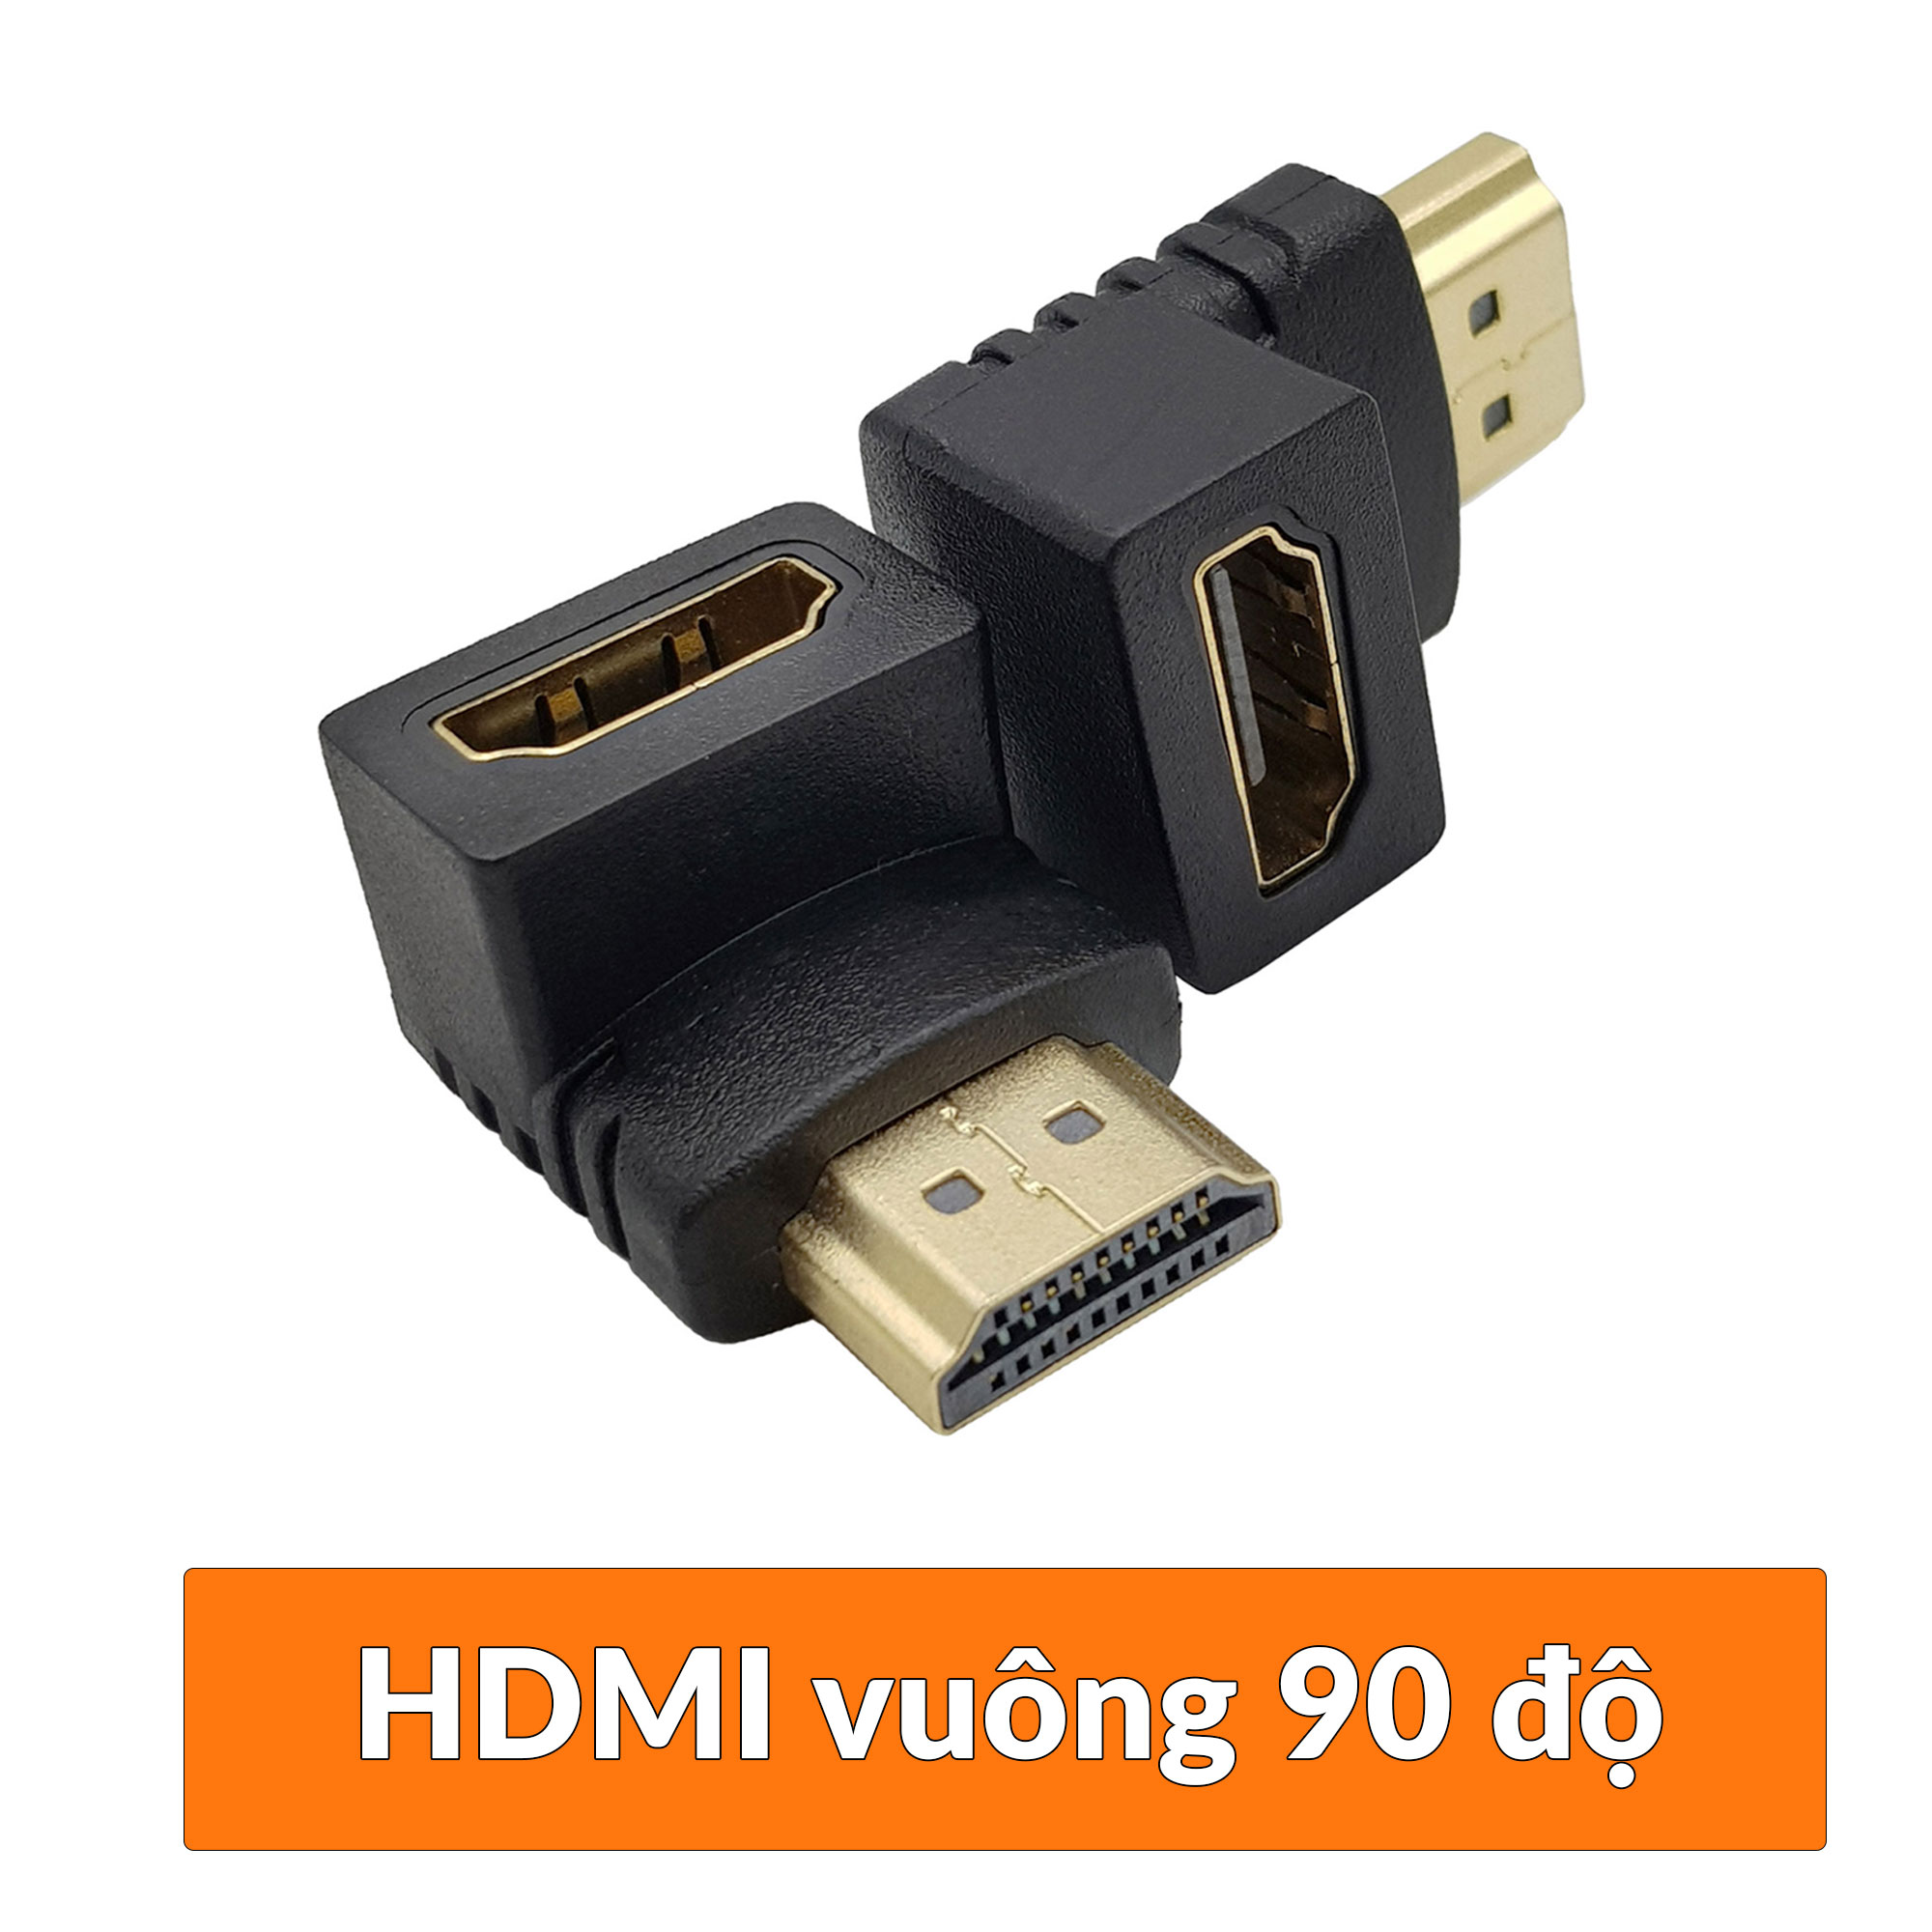 Đầu nối HDMI sang HDMI vuông góc loại 90 độ